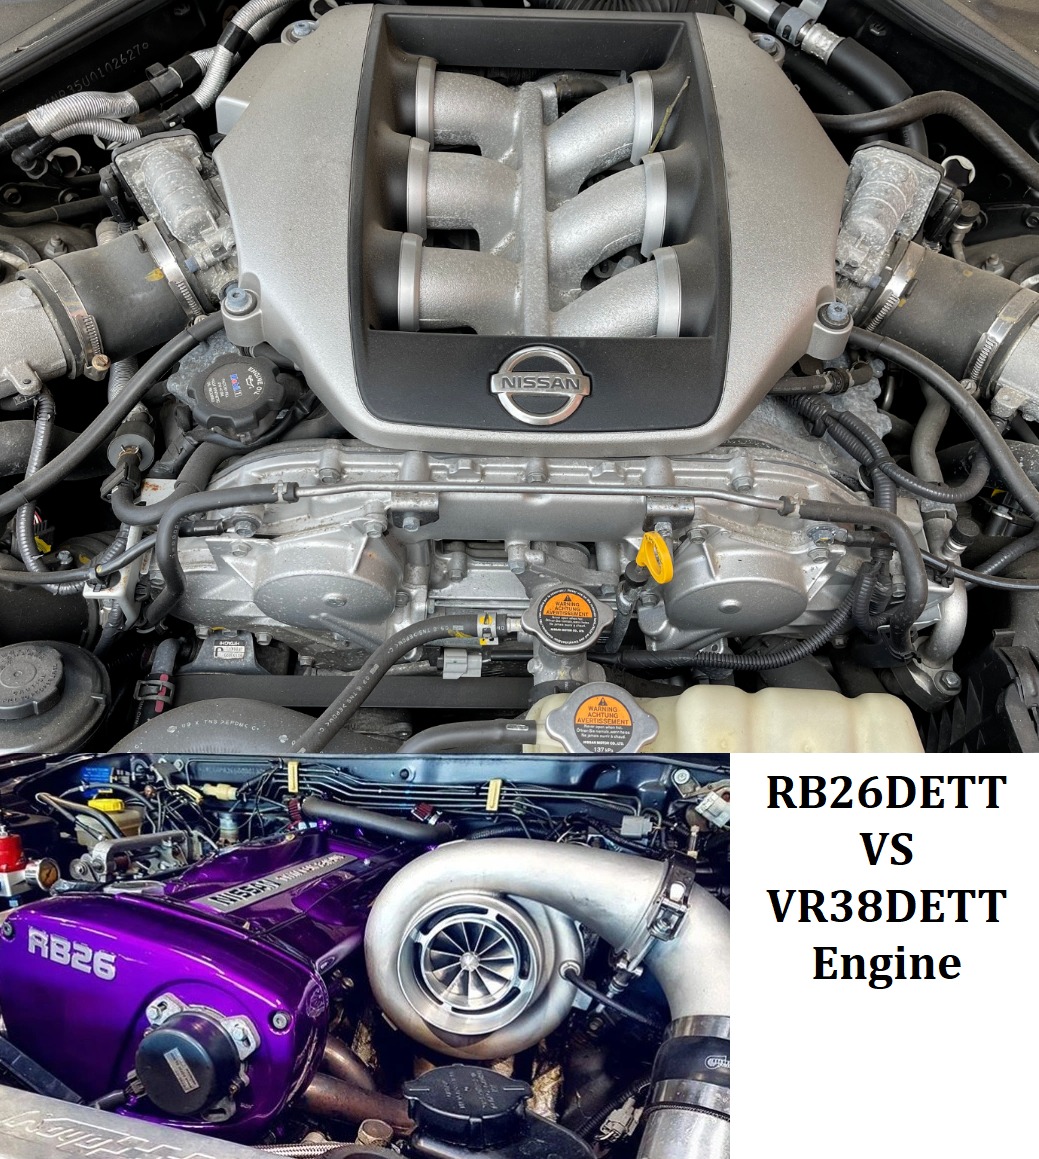 Nissan RB26DETT Vs VR38DETT Engine